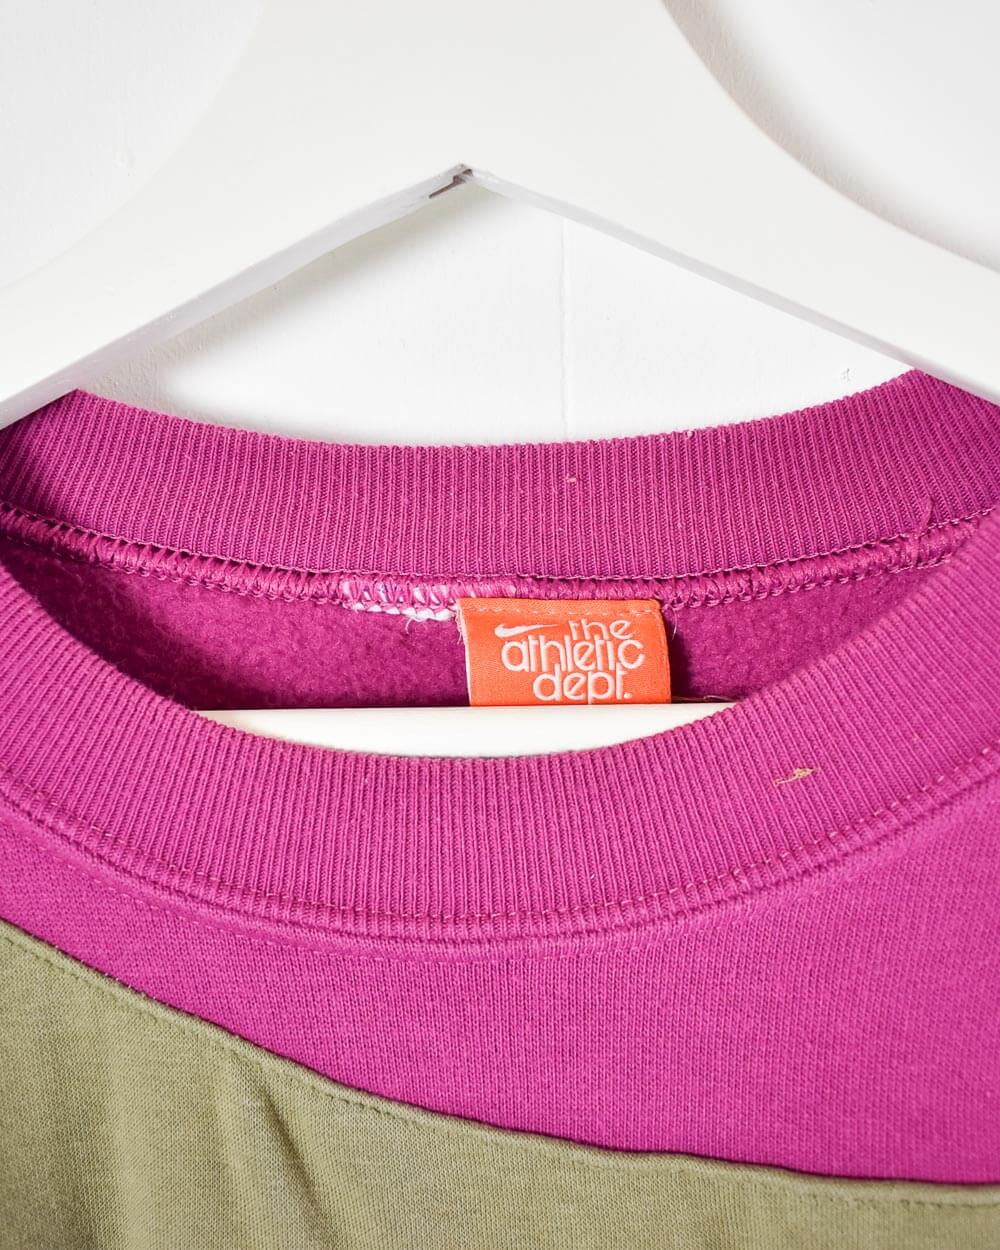 Pink Nike Rework Sweatshirt - Medium